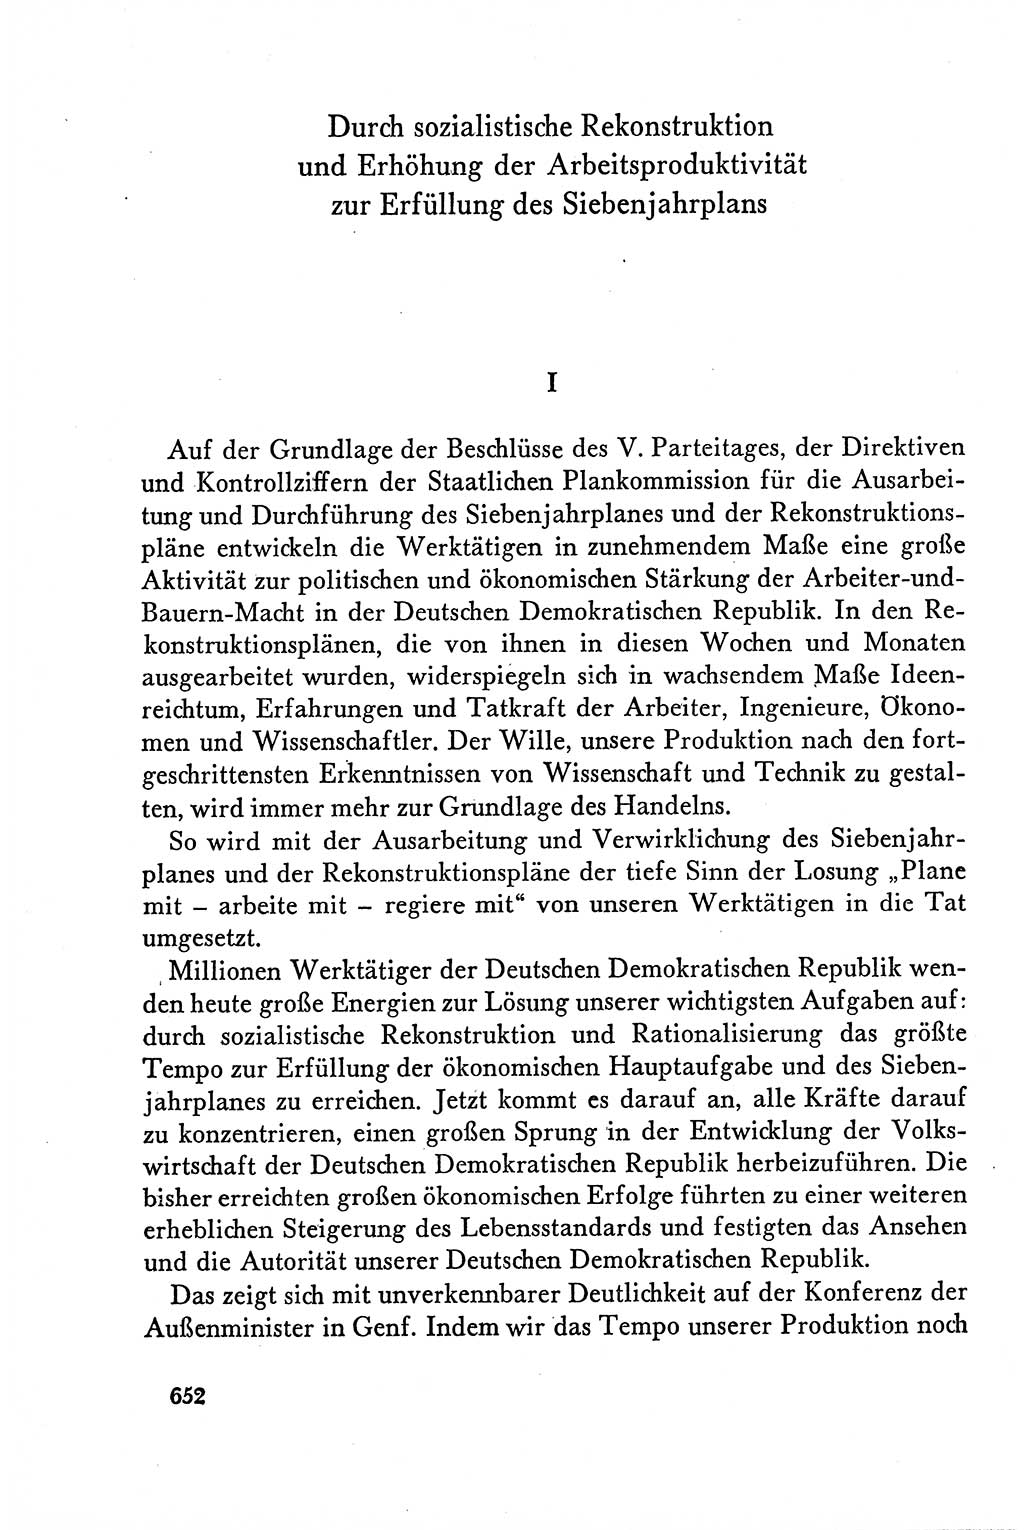 Dokumente der Sozialistischen Einheitspartei Deutschlands (SED) [Deutsche Demokratische Republik (DDR)] 1958-1959, Seite 652 (Dok. SED DDR 1958-1959, S. 652)